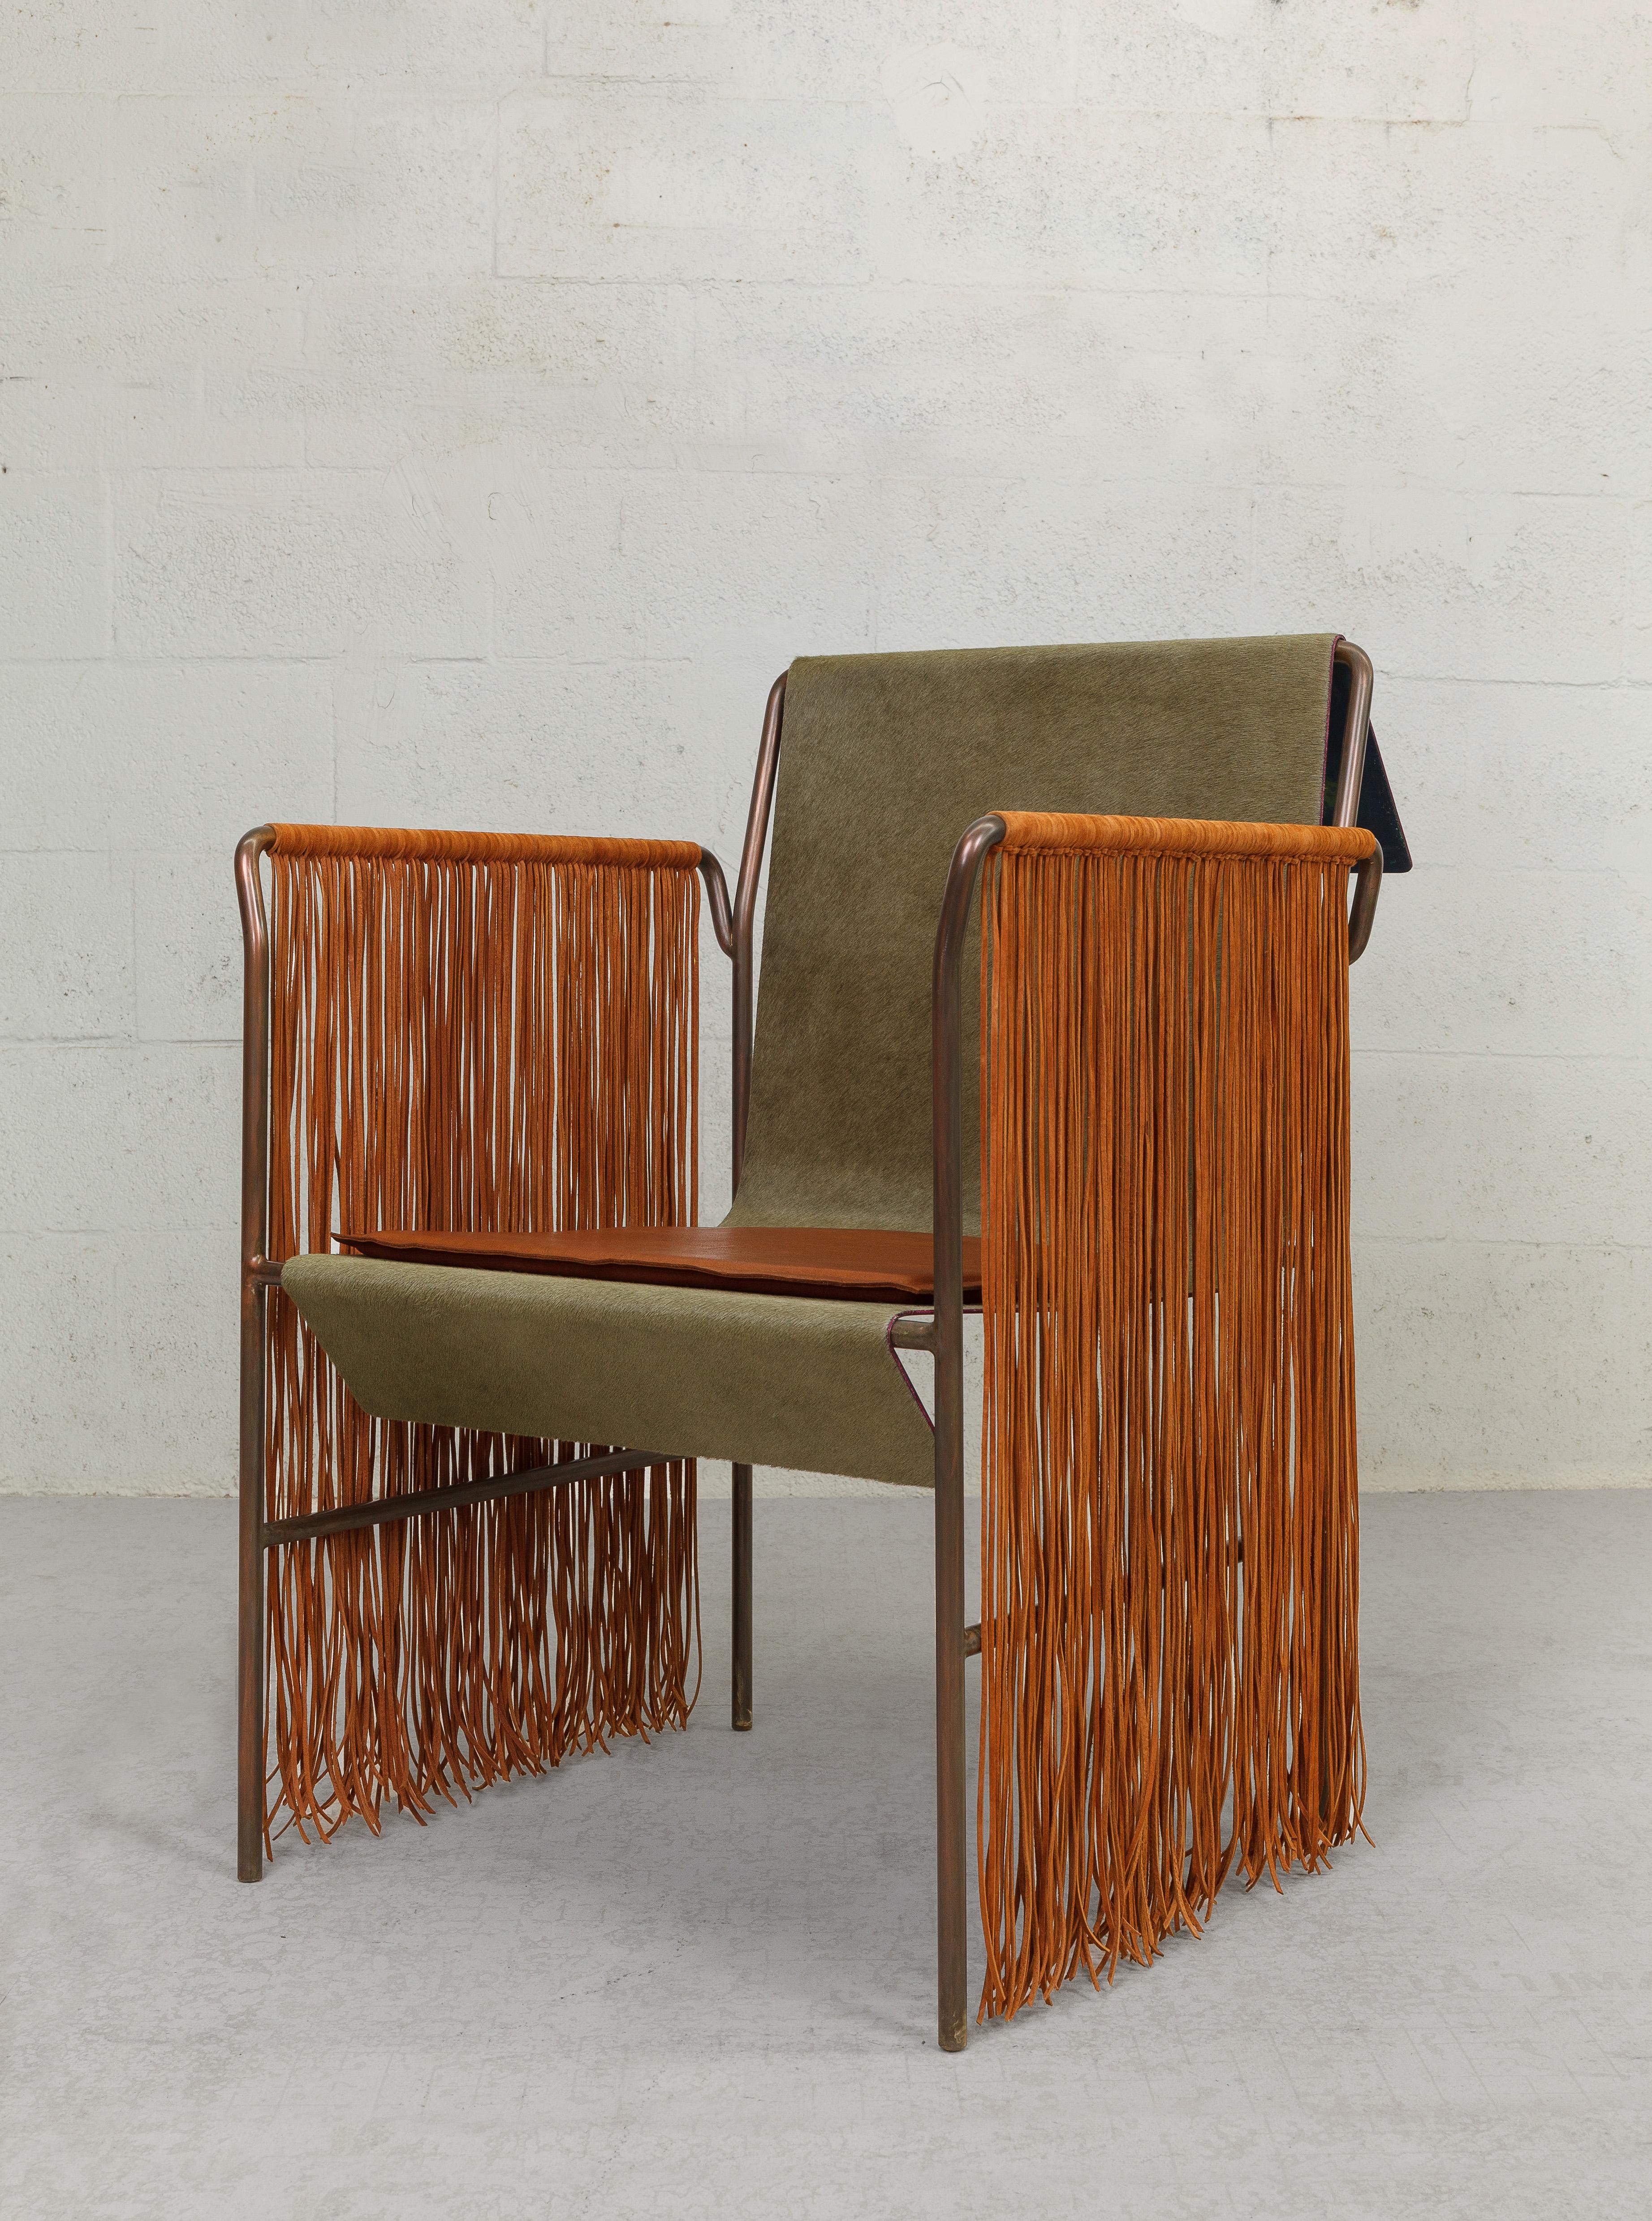 Le design contemporain de la chaise Native incorpore des matériaux qui rappellent les cultures tribales indiennes. Il s'agit d'une chaise moderne en forme de trône, faite d'une combinaison de cuir, de franges de dentelle et de poils de peau. La